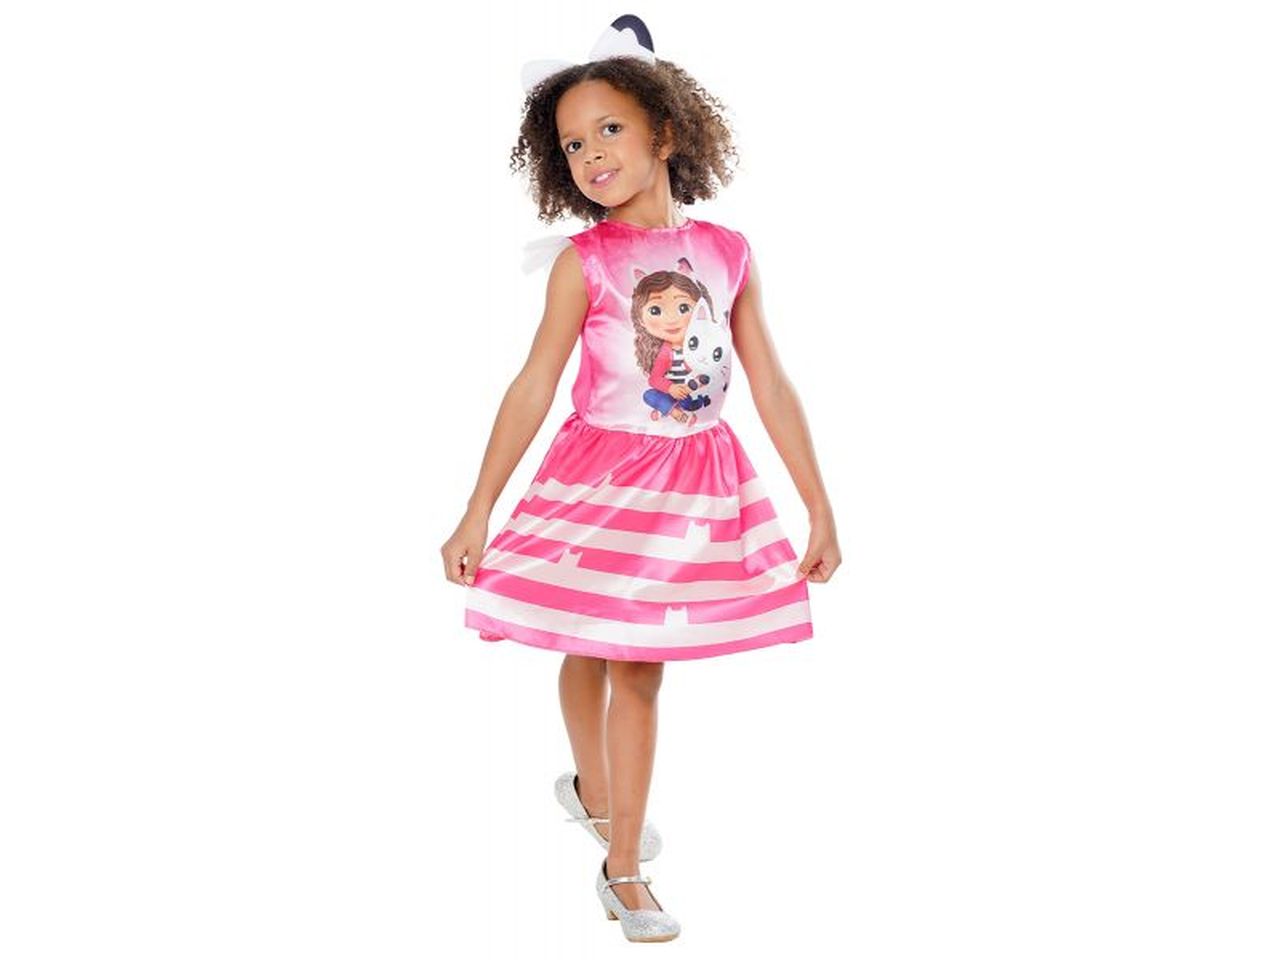 Rubies costume gabby's dollhouse taglia xxs 3-5 anni per bambina- vestito  con dettagli stampati e cerchietto con orecchie